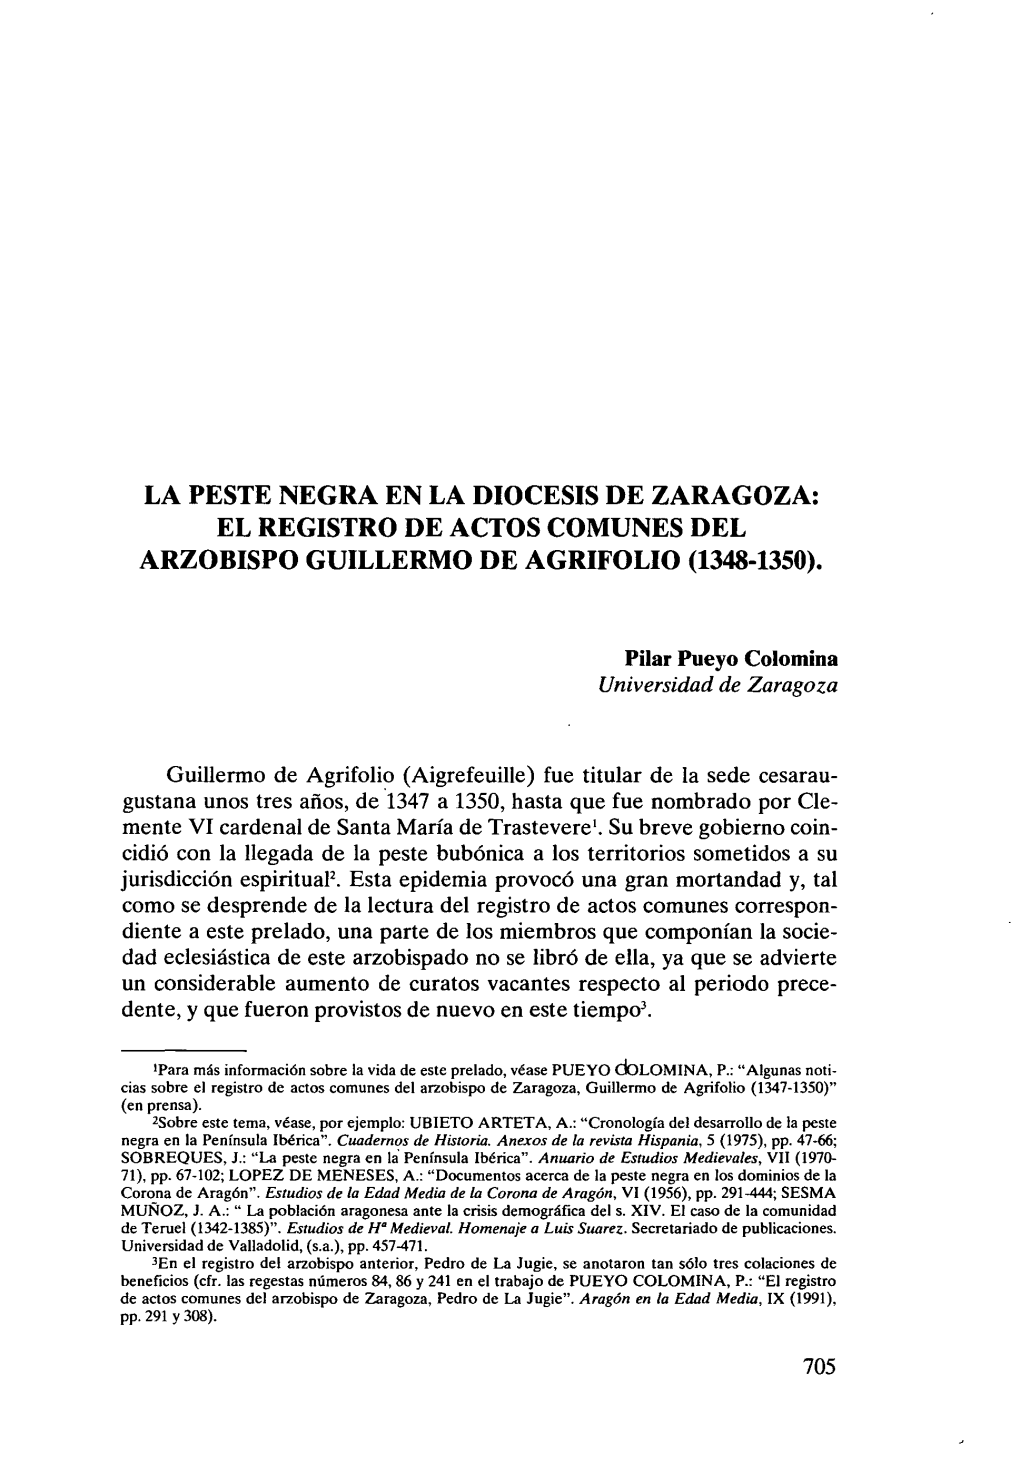 La Peste Negra En La Diocesis De Zaragoza: El Registro De Actos Comunes Del Arzobispo Guillermo De Agrifolio (1348-1350)